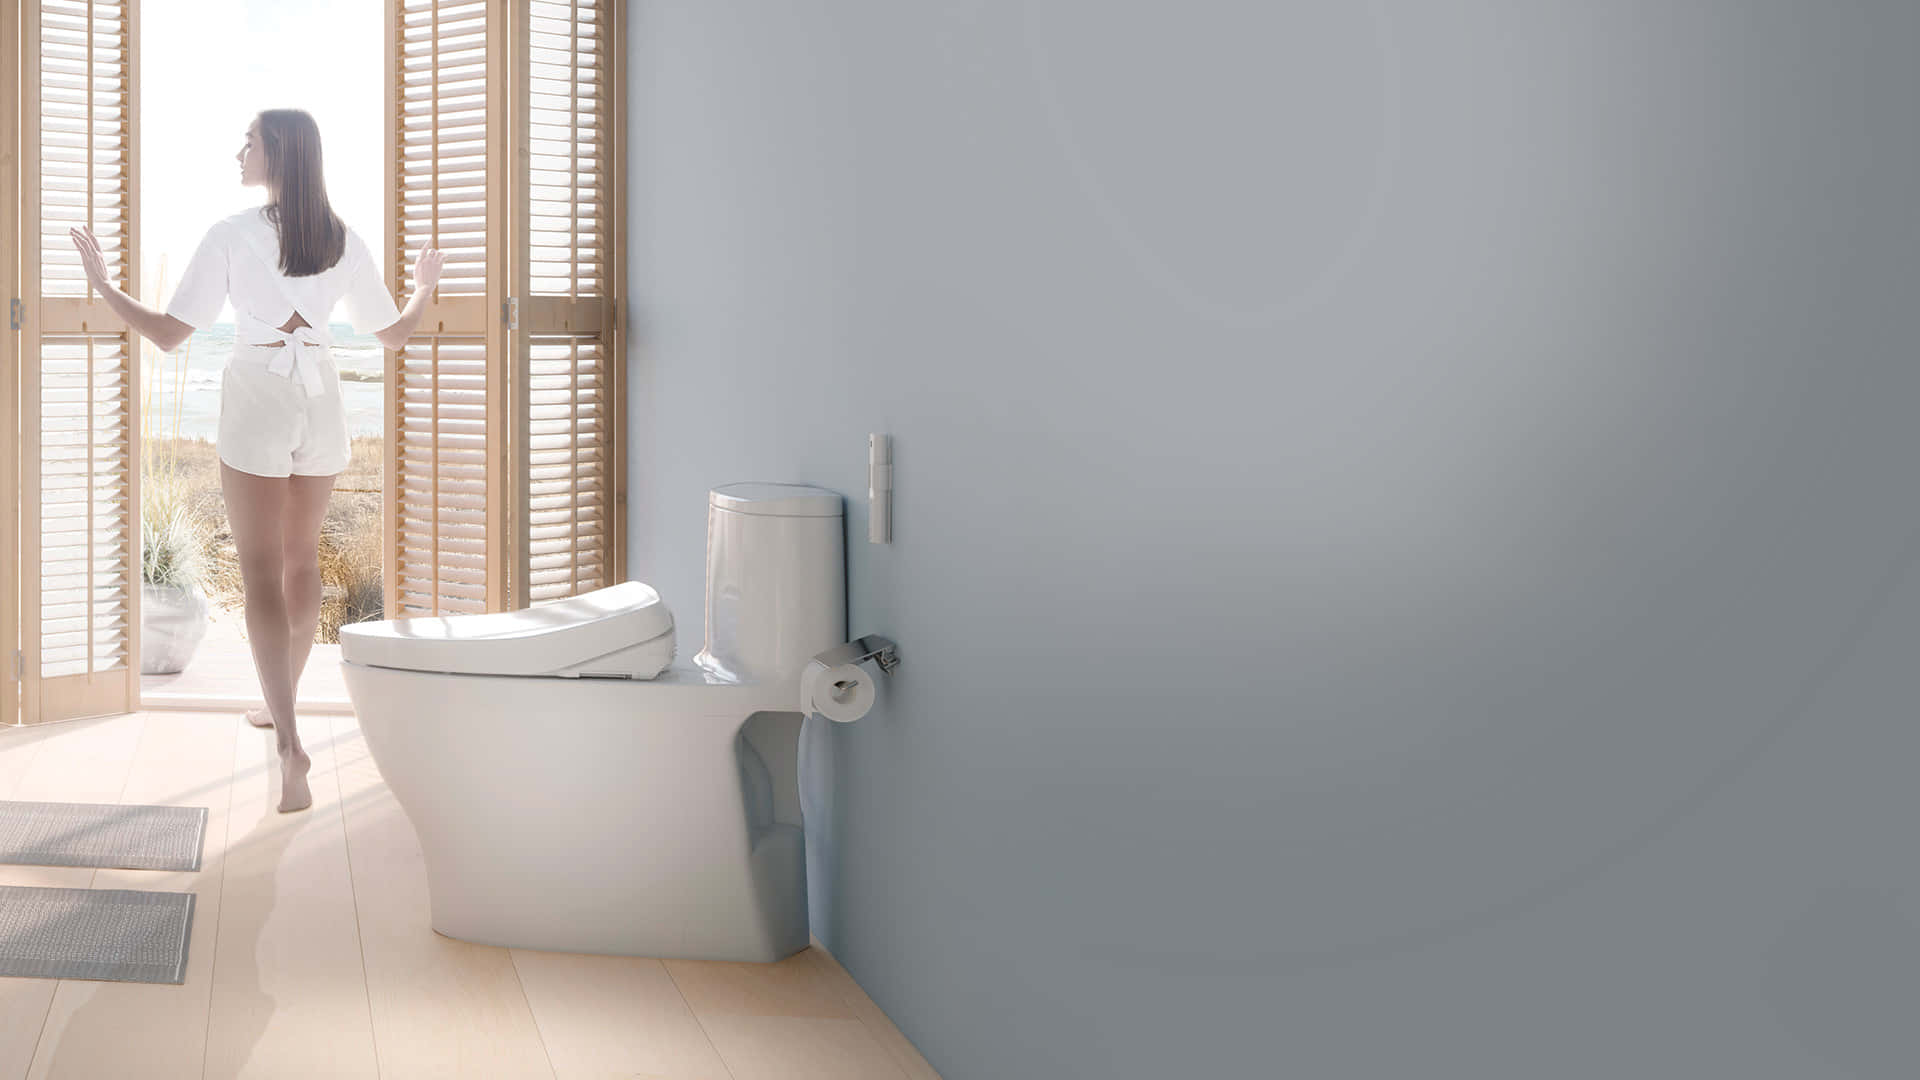 "A Modern Toilet in a Clean Bathroom"